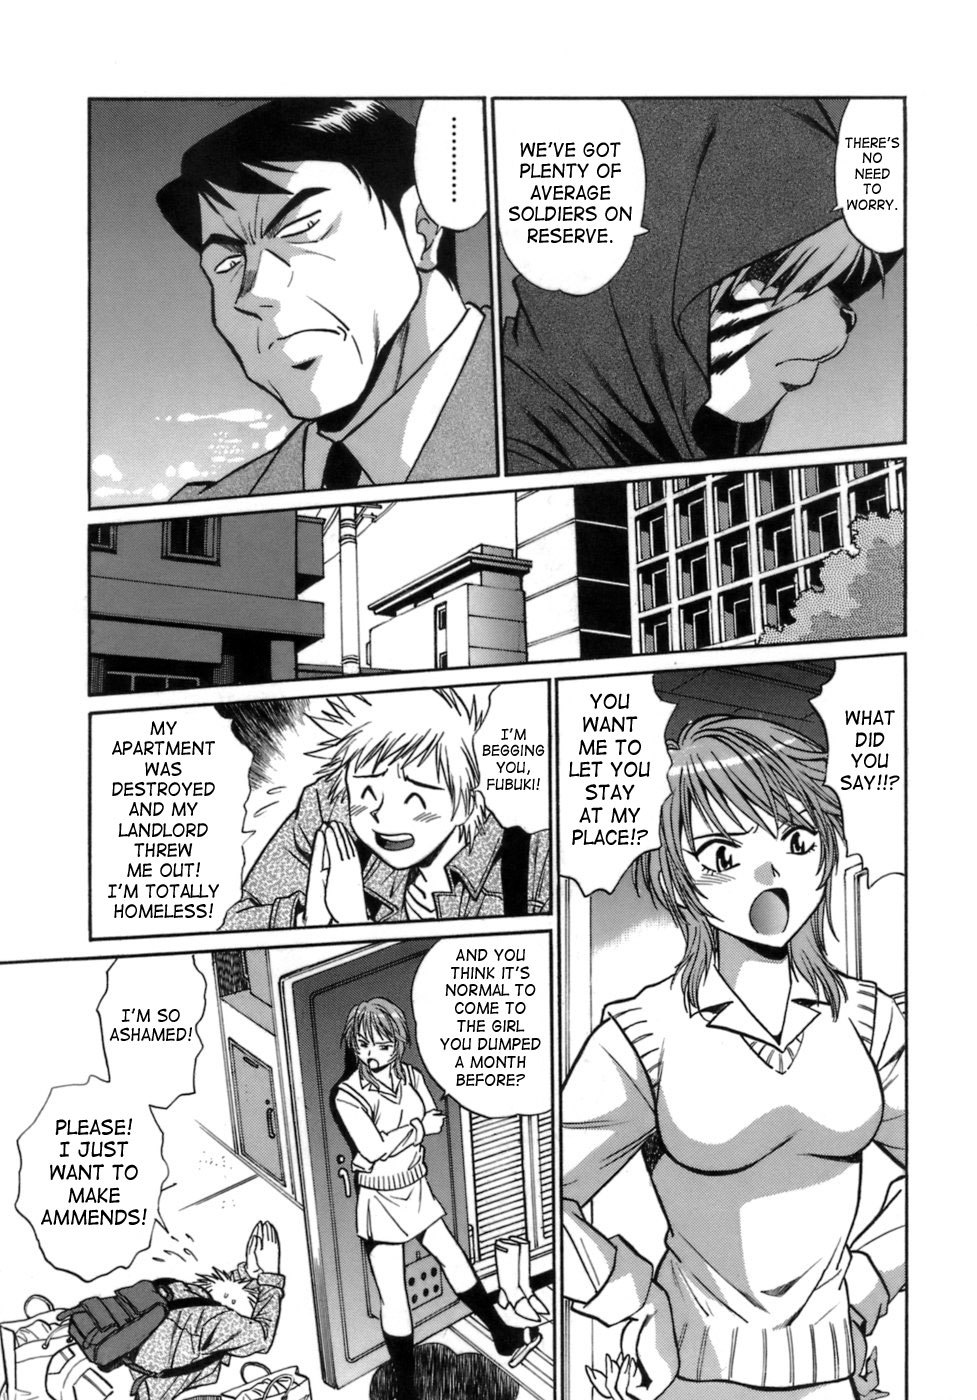 Tail Chaser Vol.1 21 hentai manga